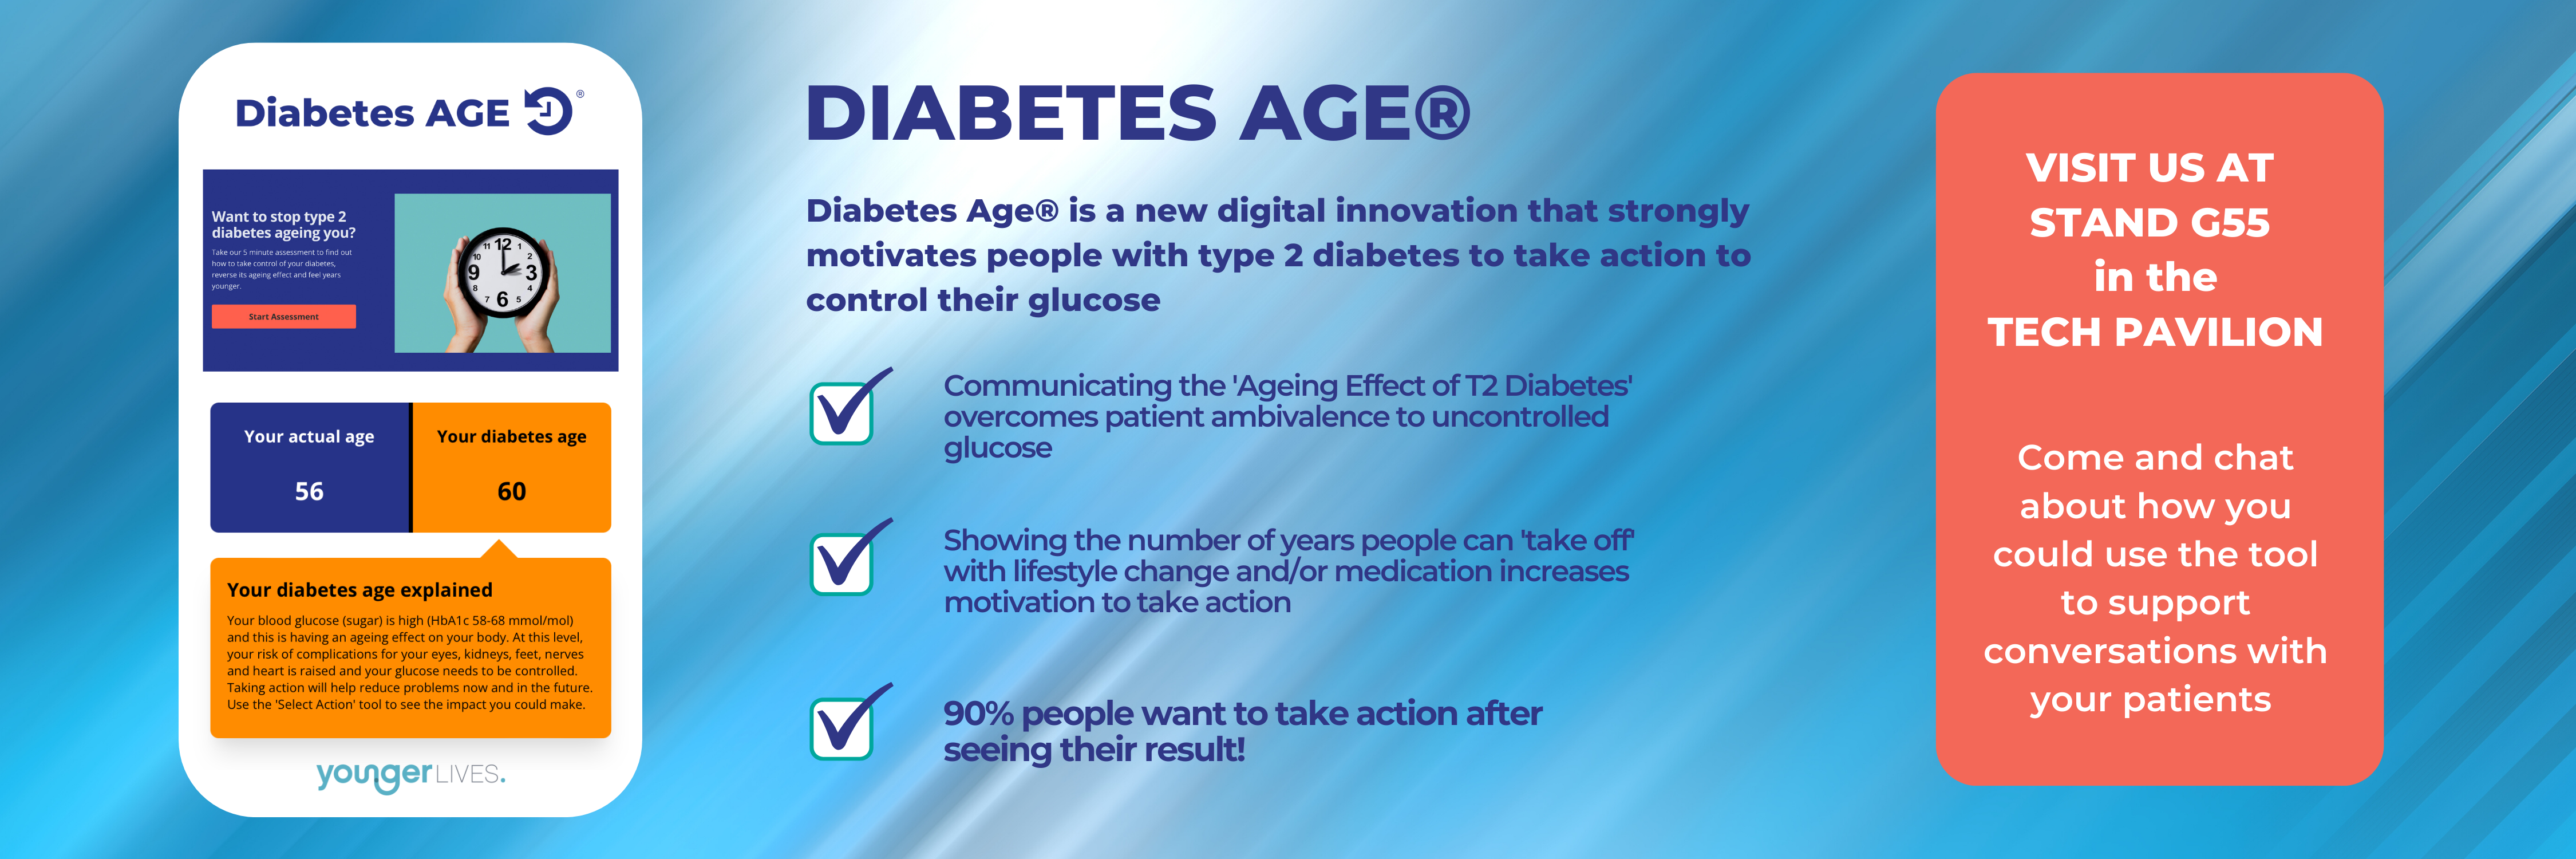 Diabetes Age